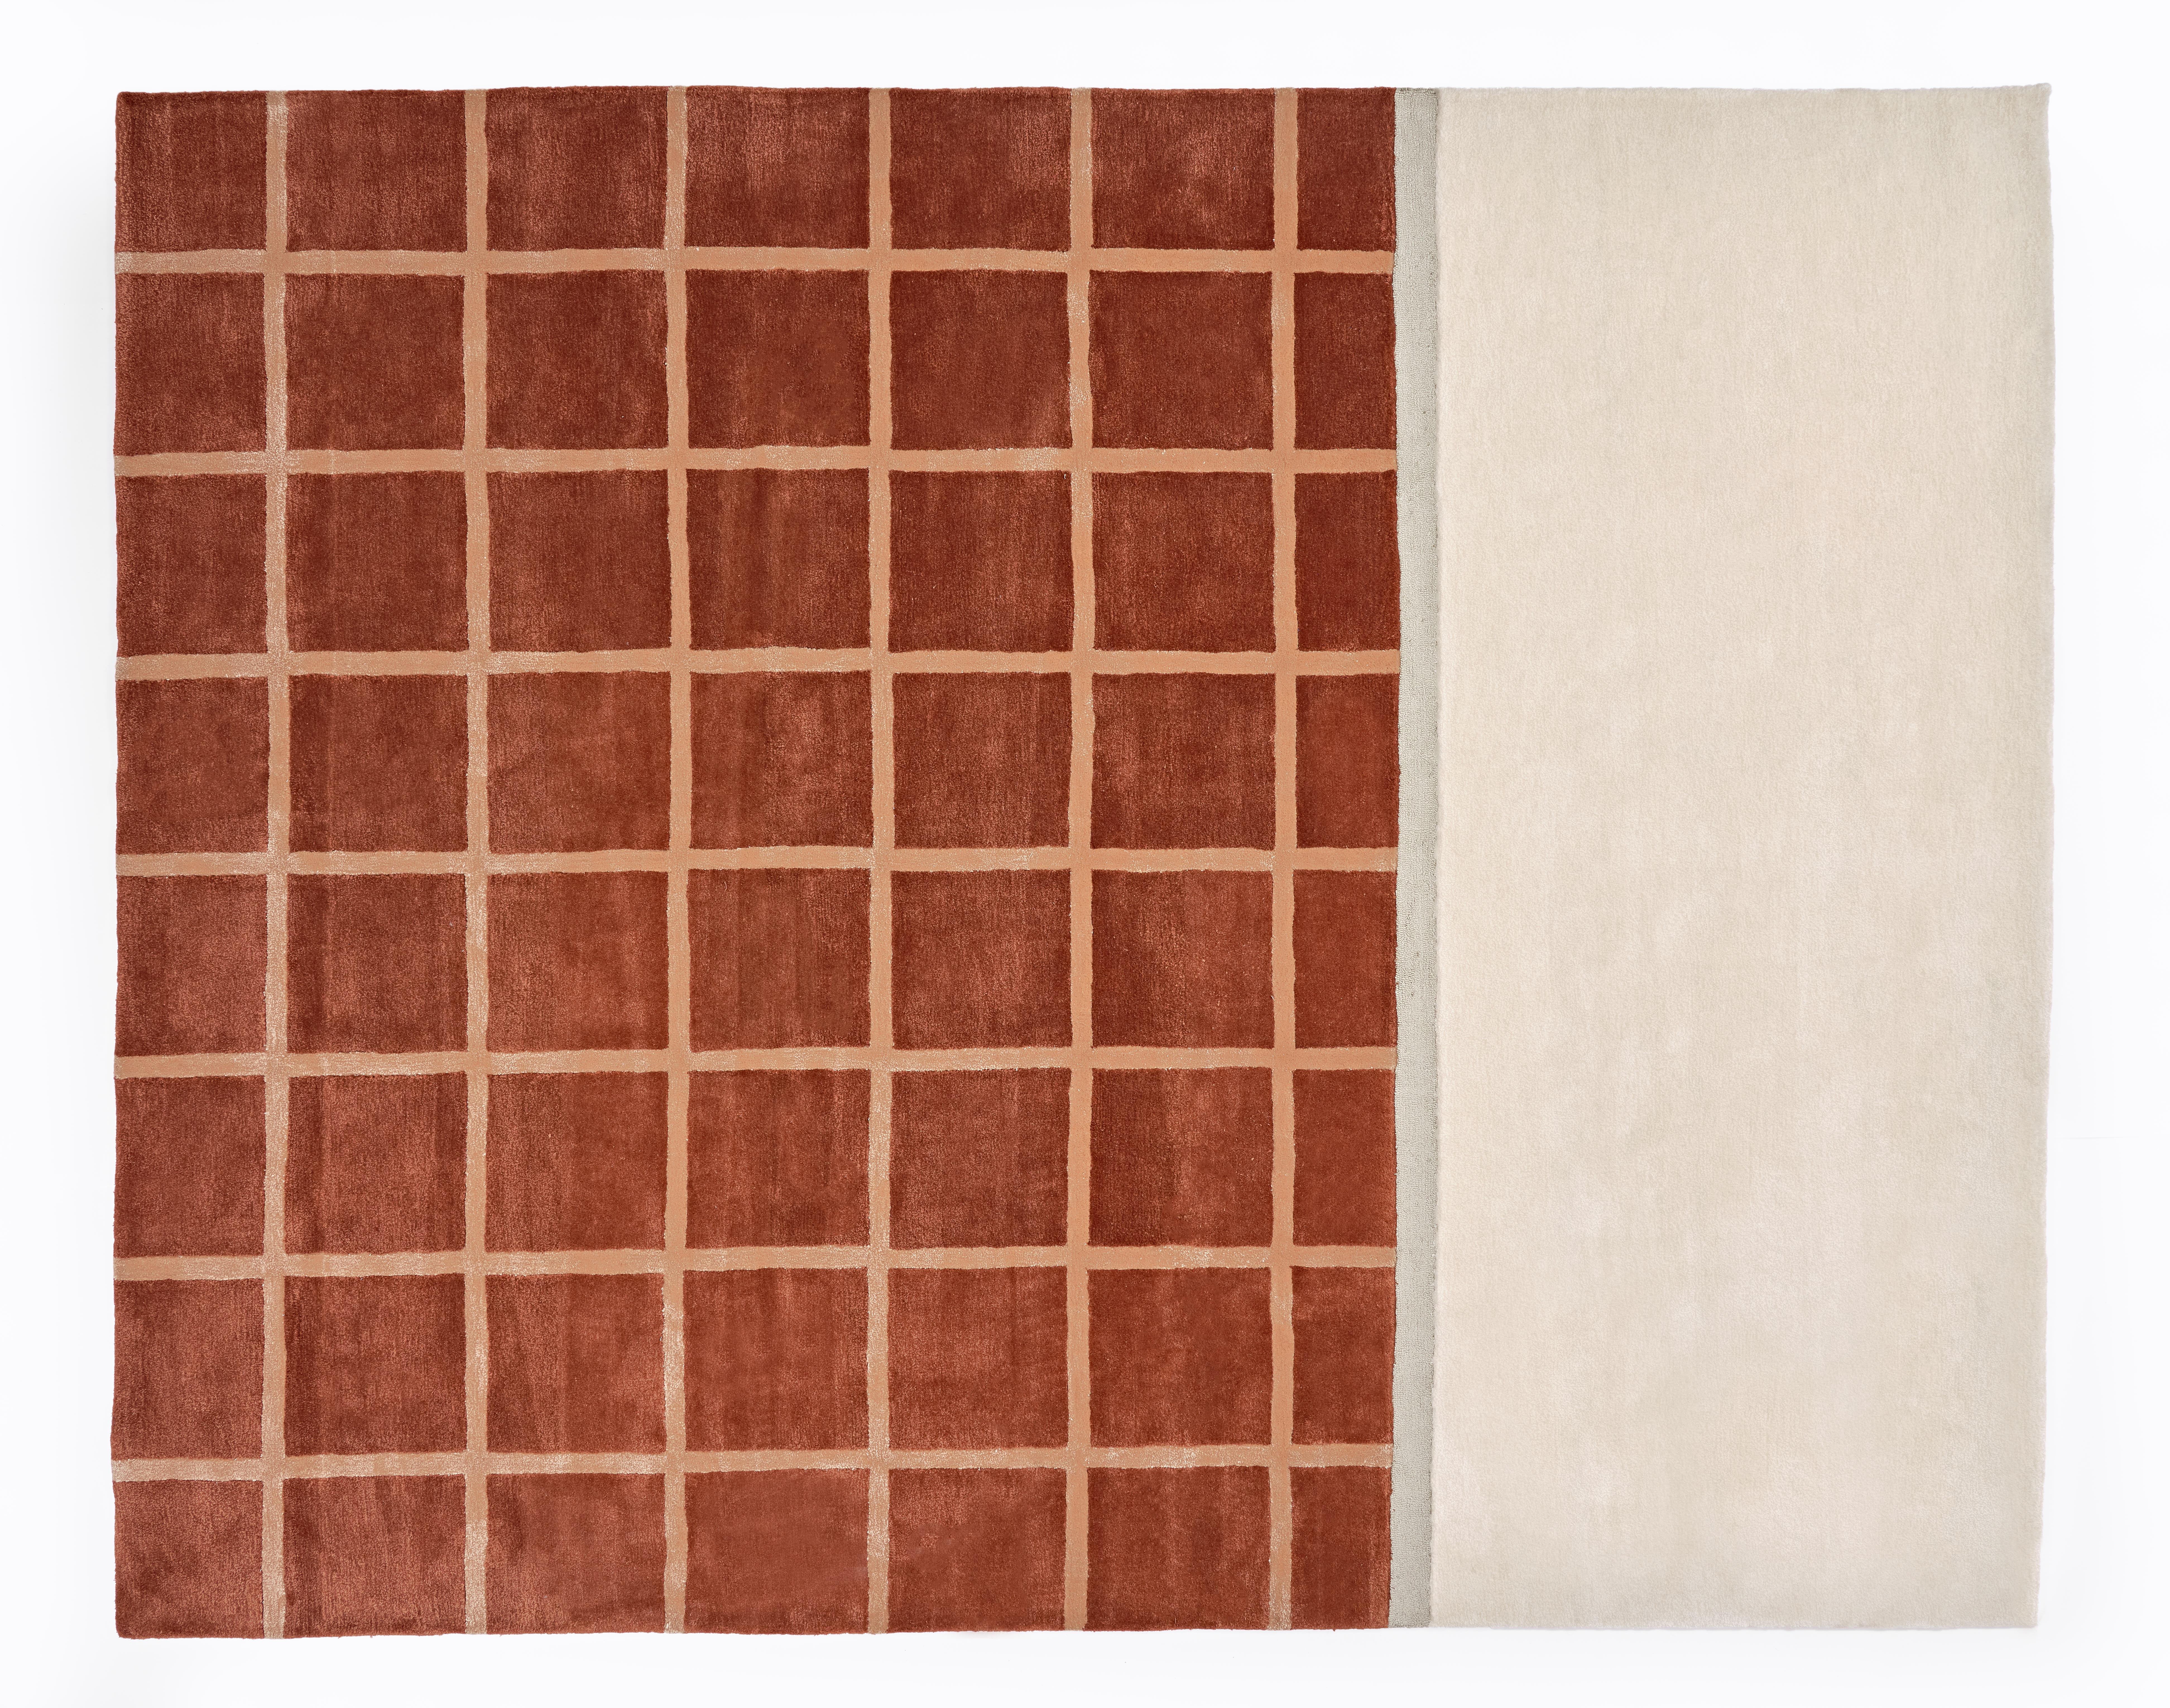 Le tapis Kenny présente notre motif quadrillé caractéristique dans une palette de couleurs douces et modernes. Pas un autre neutre pour aider à mettre une pièce à la terre. Des tapis qui font la différence. Tapis touffeté à la main, composé d'un